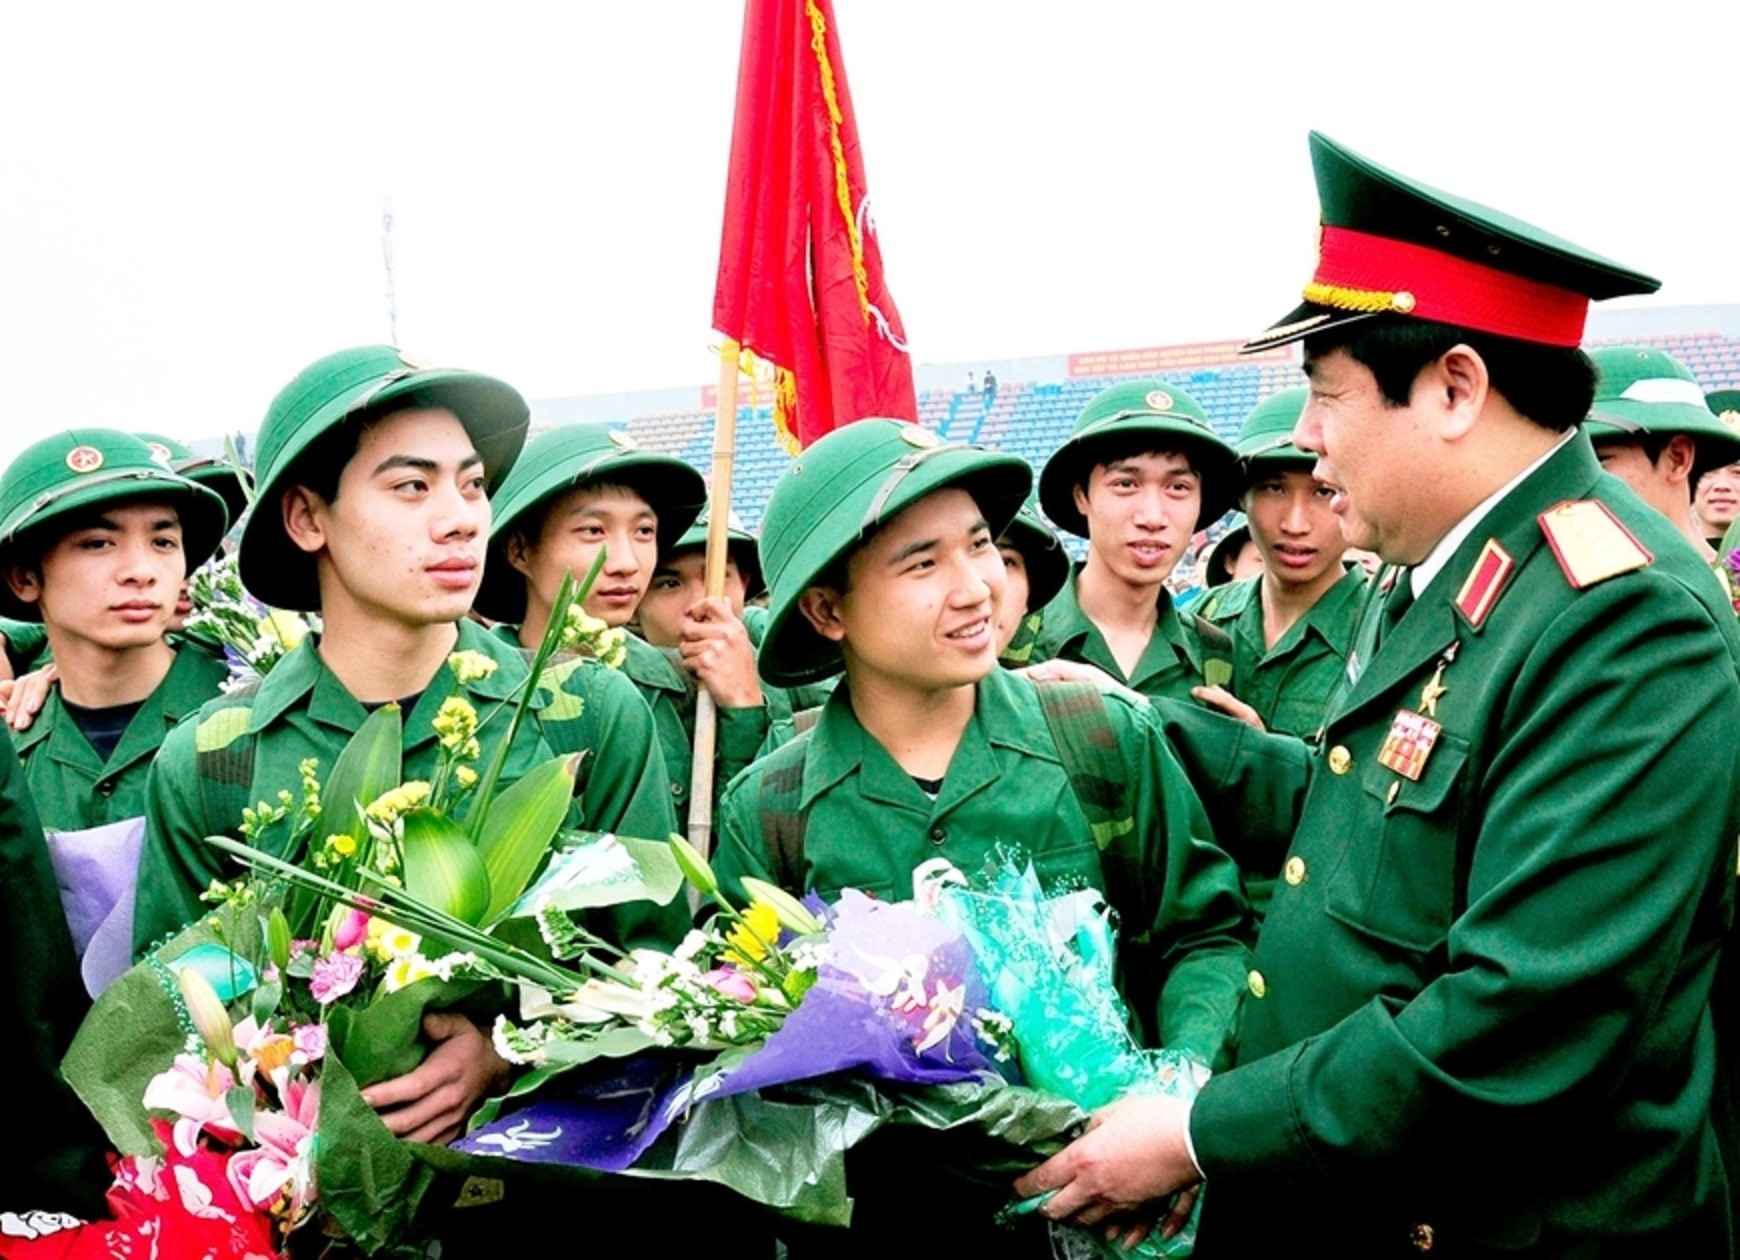 Đại tướng Phùng Quang Thanh động viên chiến sĩ mới lên đường nhập ngũ tại huyện Đan Phượng, Hà Nội vào ngày 25/3/2013. Ảnh: Minh Trường